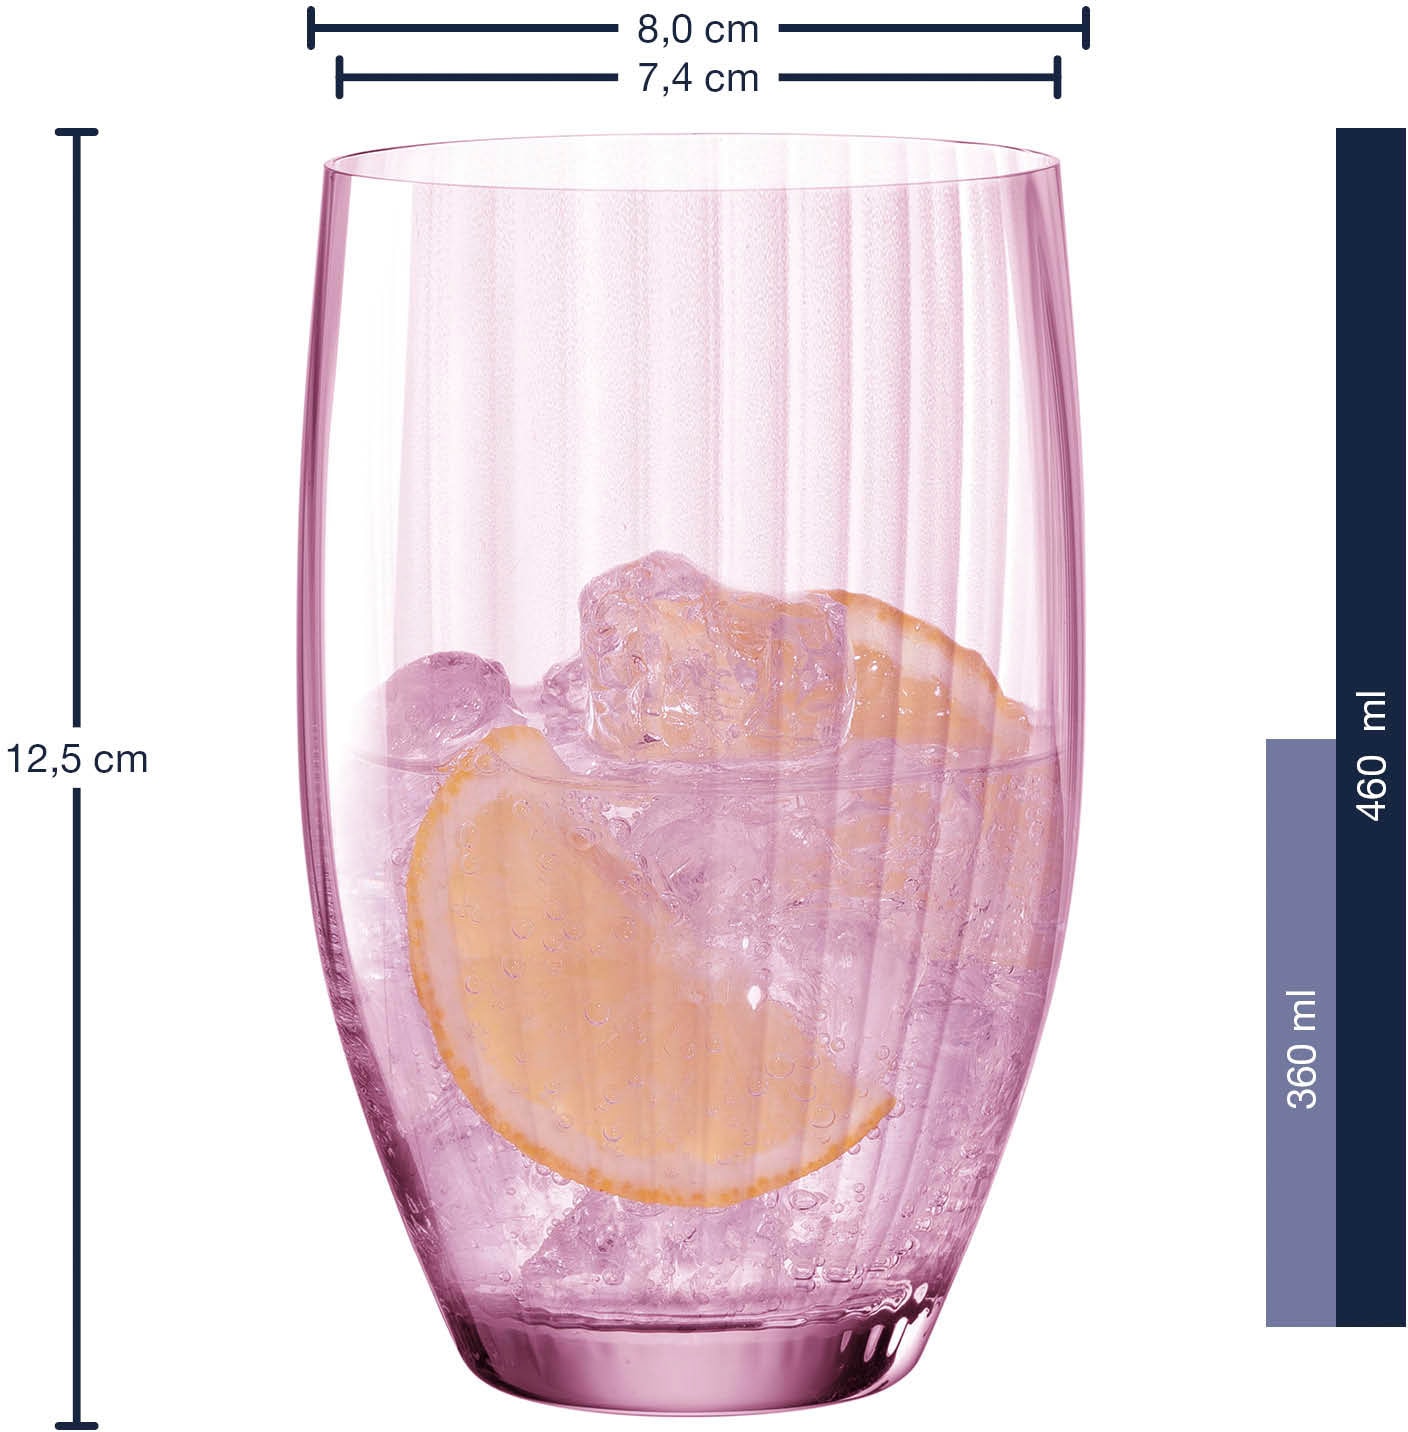 LEONARDO Longdrinkglas »POESIA«, (Set, 6 tlg.), 460 ml, 6-teilig